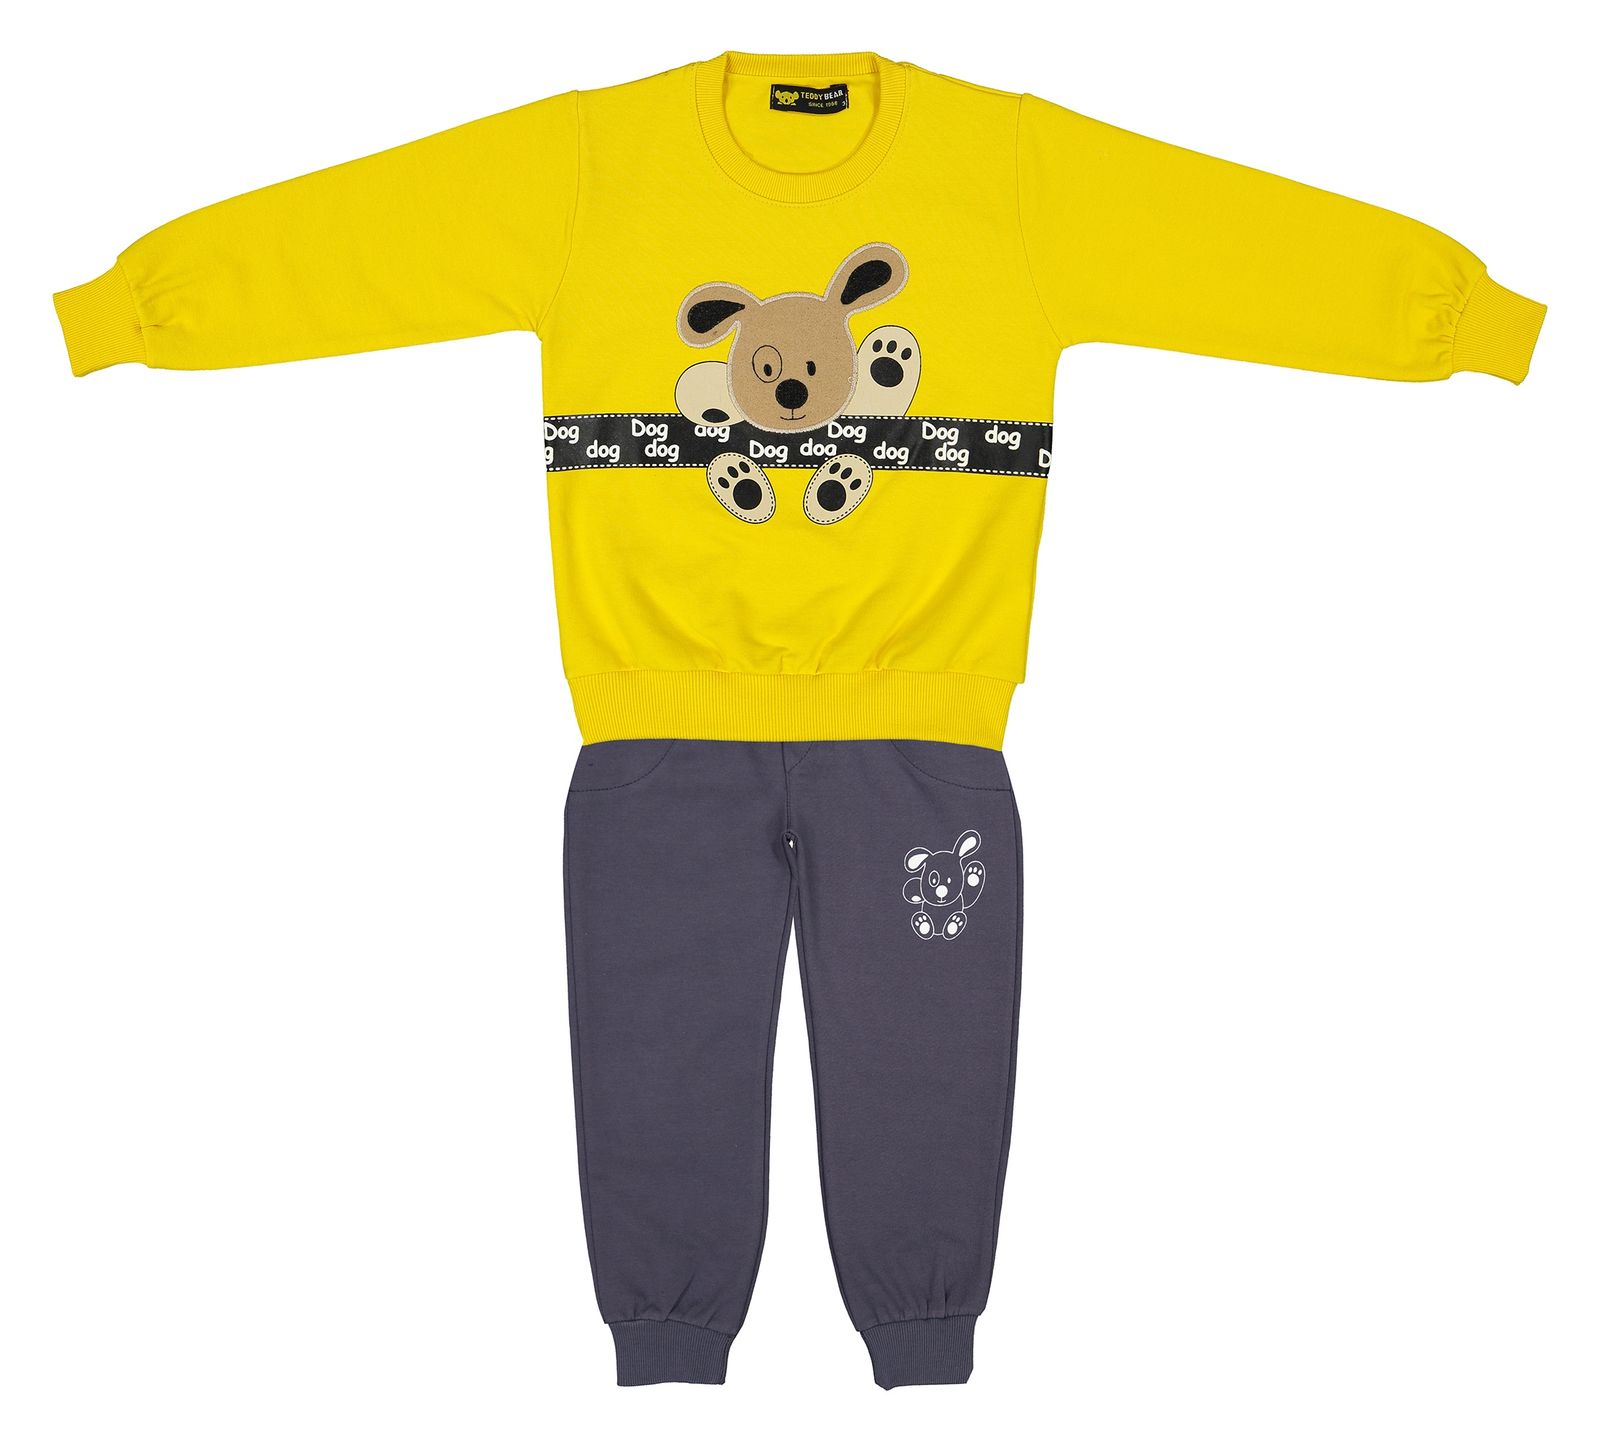 ست سویشرت و شلوار پسرانه خرس کوچولو مدل 2101105-16 - زرد - 1